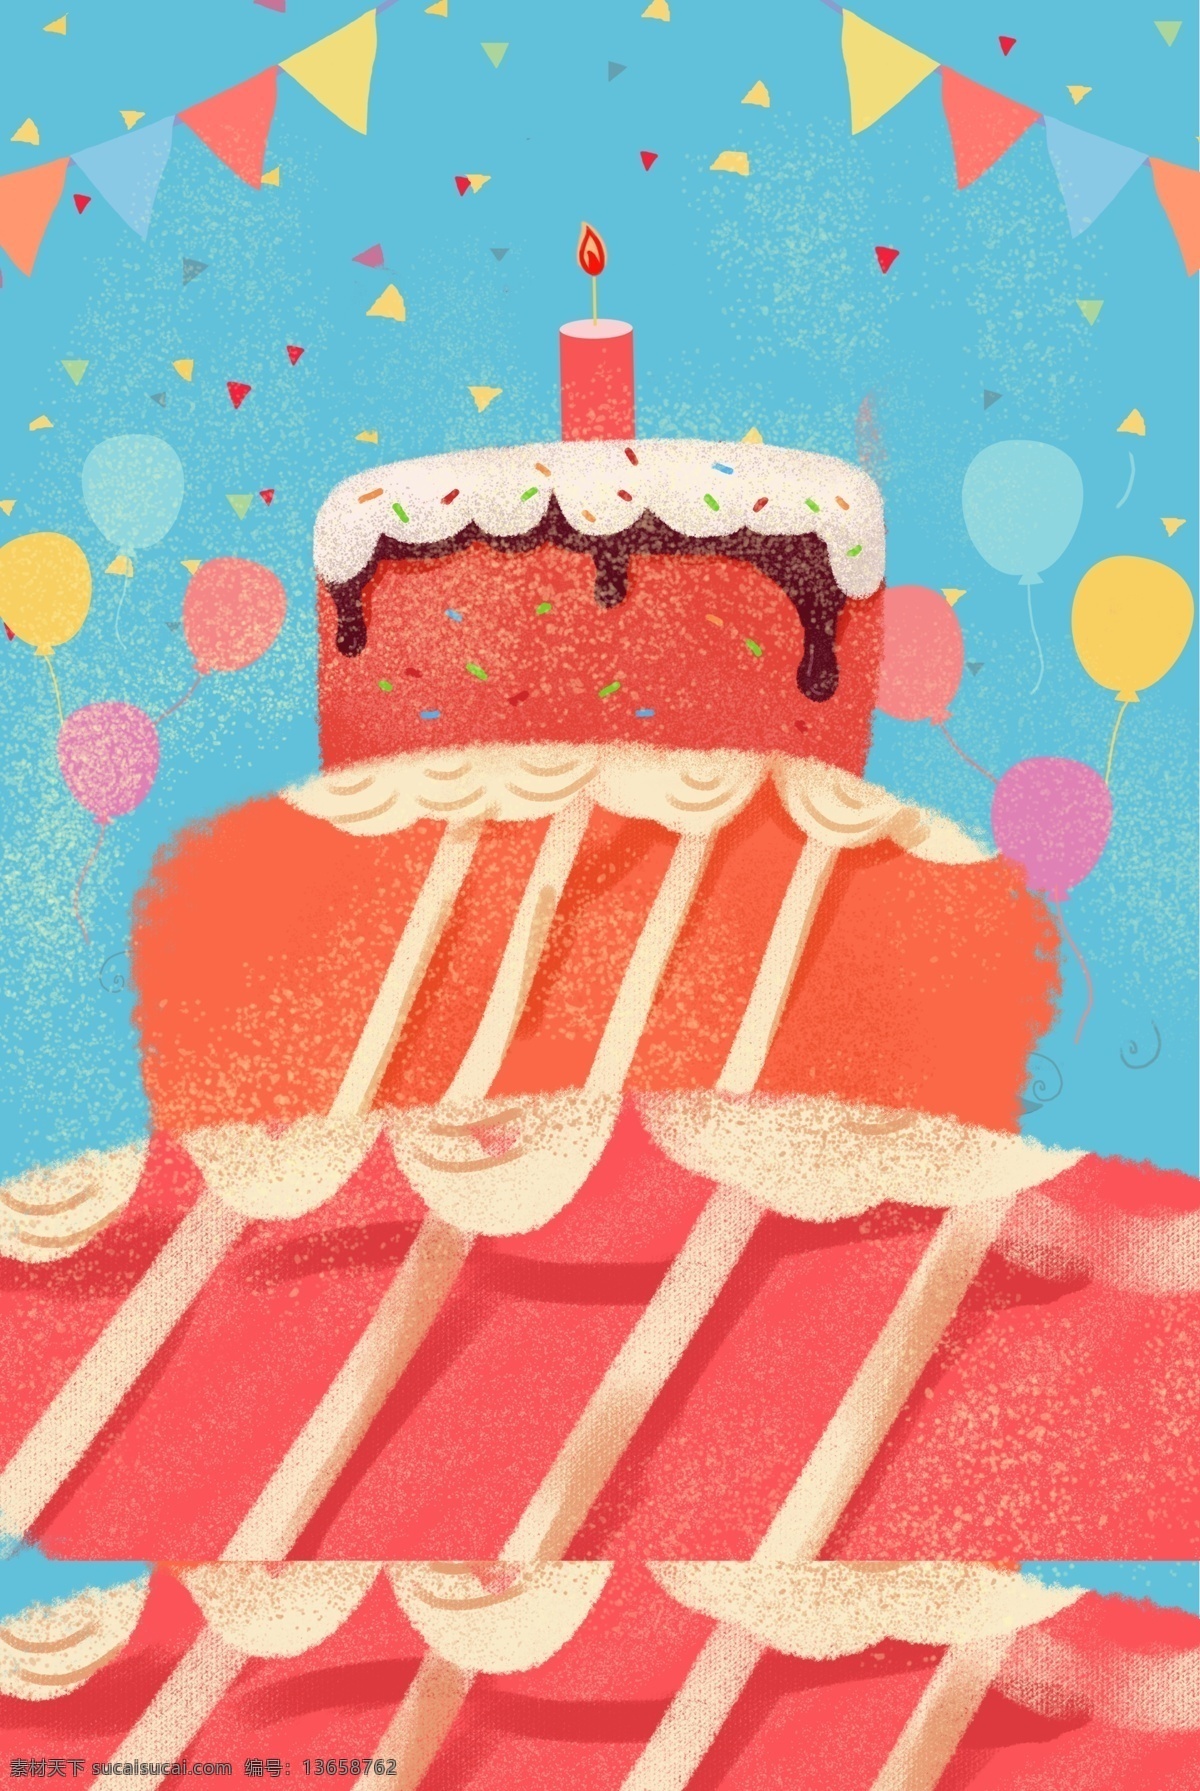 红色 生日蛋糕 蓝色 背景 食品 甜点 海报 生日 蛋糕 糕点 喜庆 广告 食物 开心